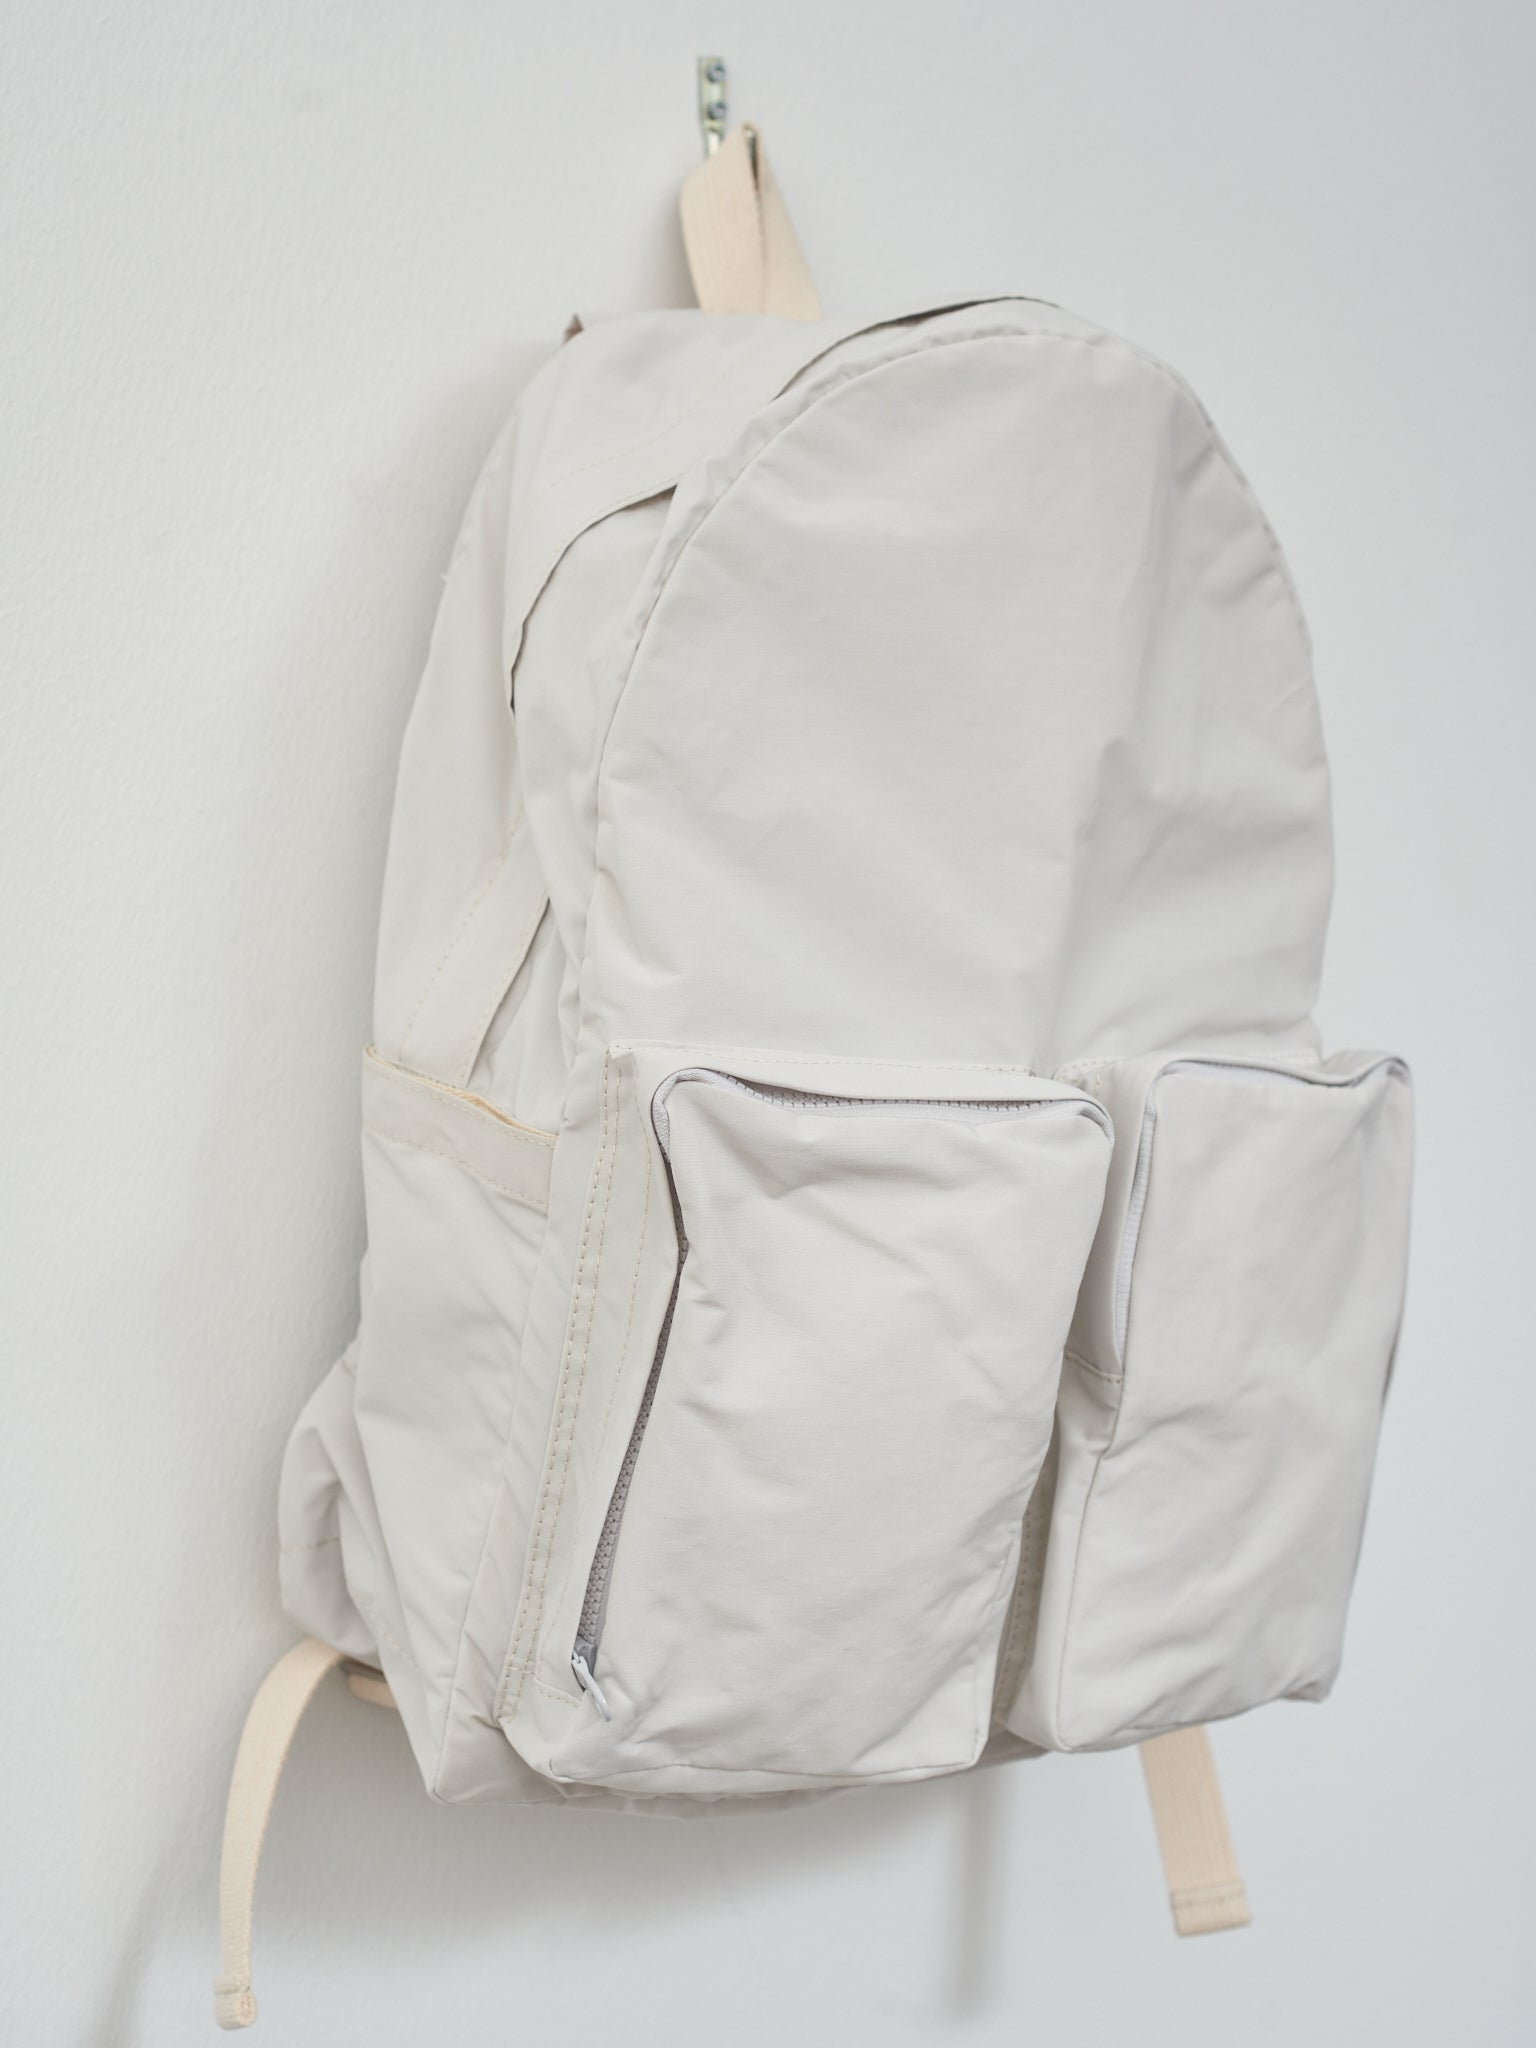 Namu Shop - Amiacalva N/C Cloth Backpack - Ice